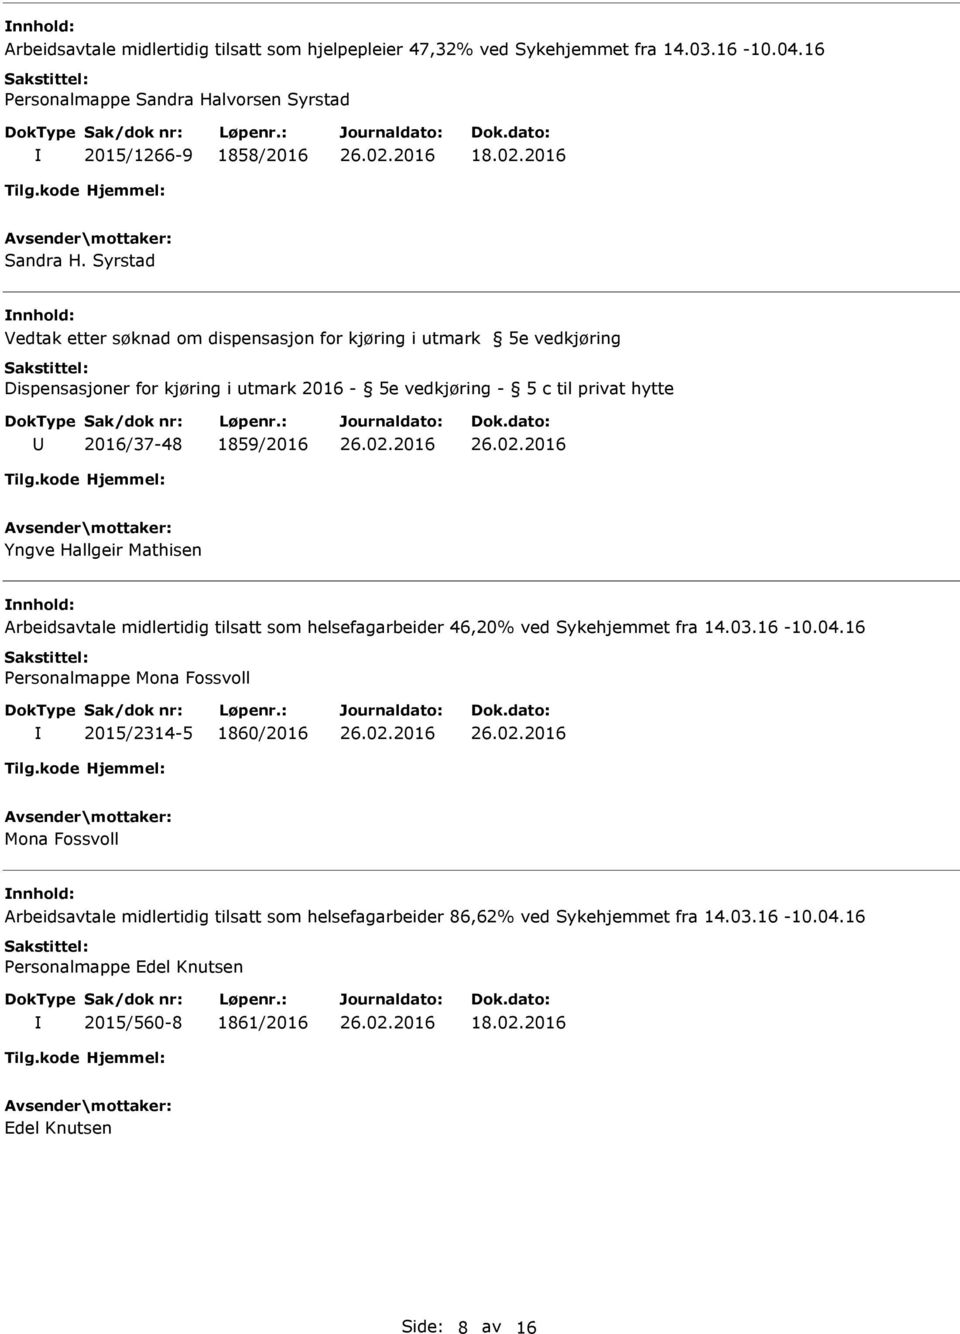 1859/2016 Yngve Hallgeir Mathisen nnhold: Arbeidsavtale midlertidig tilsatt som helsefagarbeider 46,20% ved Sykehjemmet fra 14.03.16-10.04.